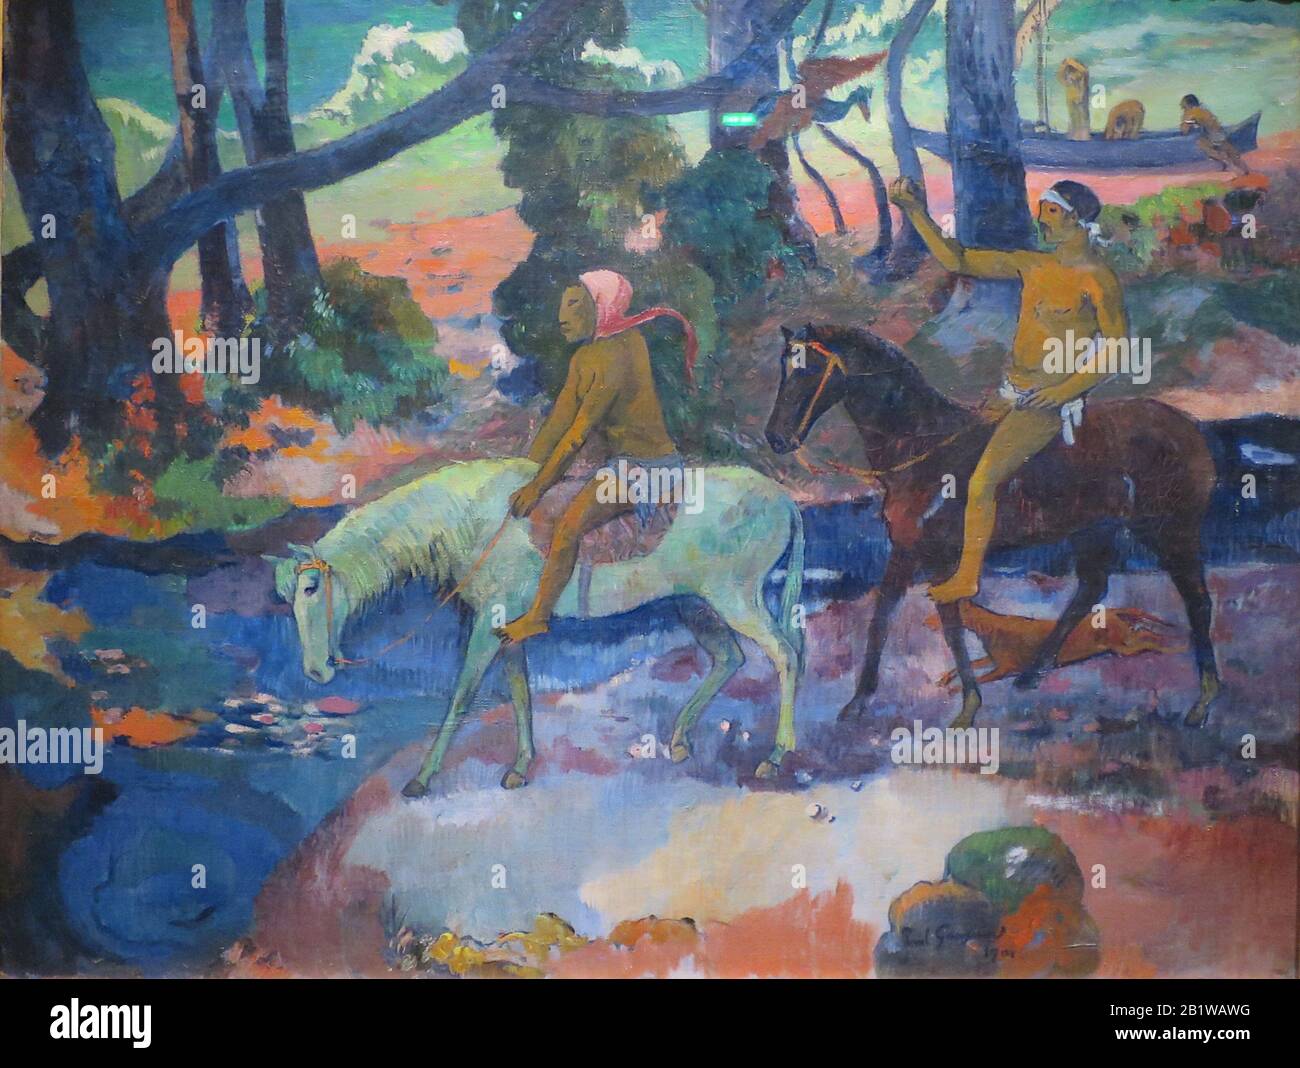 Le Ford (le vol) (1901) peinture du début du XXe siècle de Paul Gauguin - très haute résolution et image de qualité Banque D'Images